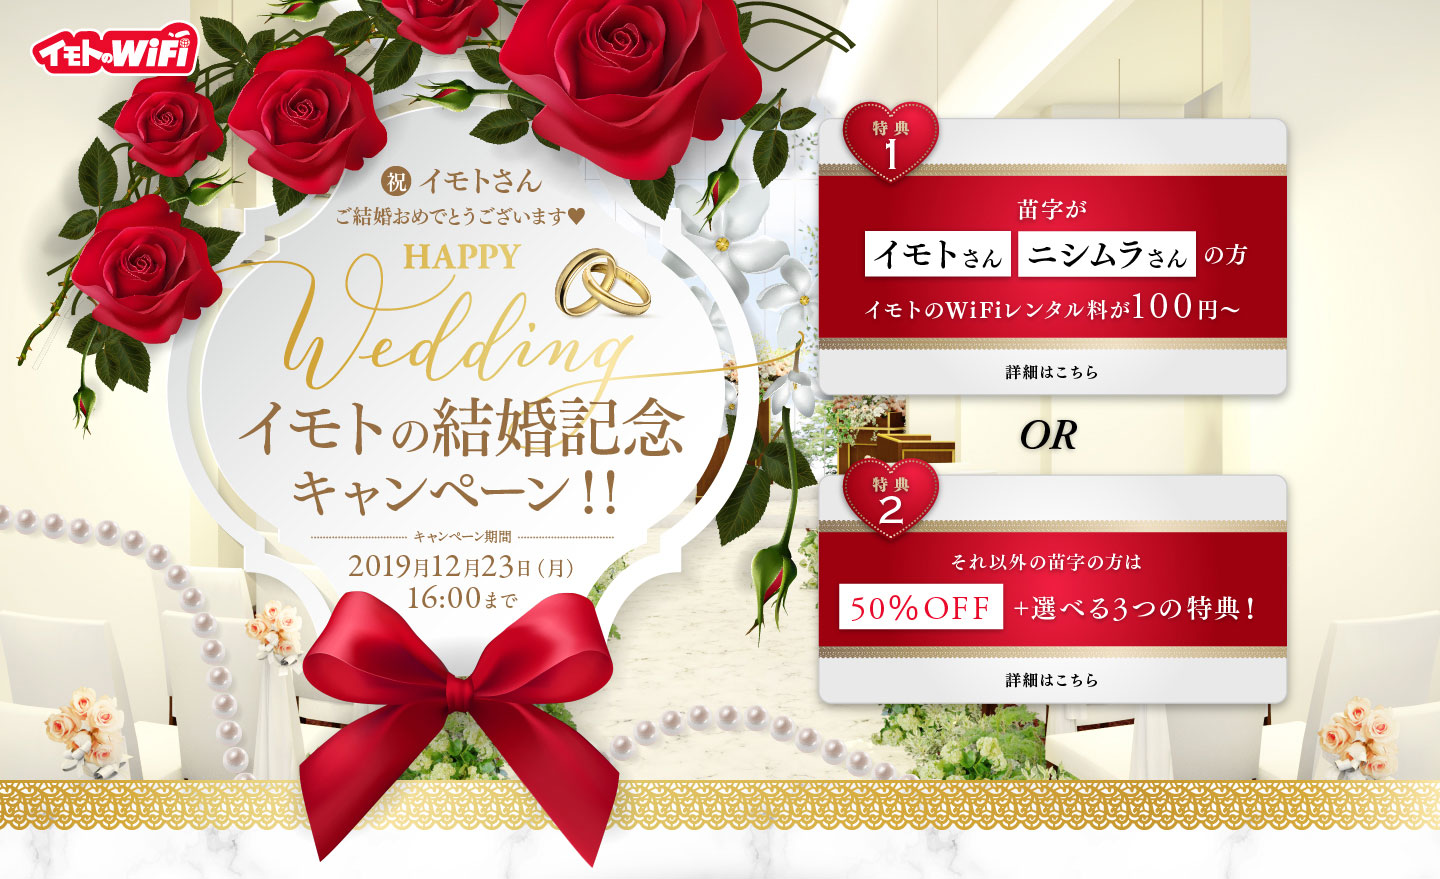 イモトアヤコさんのご結婚を祝し イモトのwifi 緊急キャンペーン開催 イモトさん ご結婚おめでとうございます イモトの結婚 記念キャンペーン エクスコムグローバル株式会社のプレスリリース